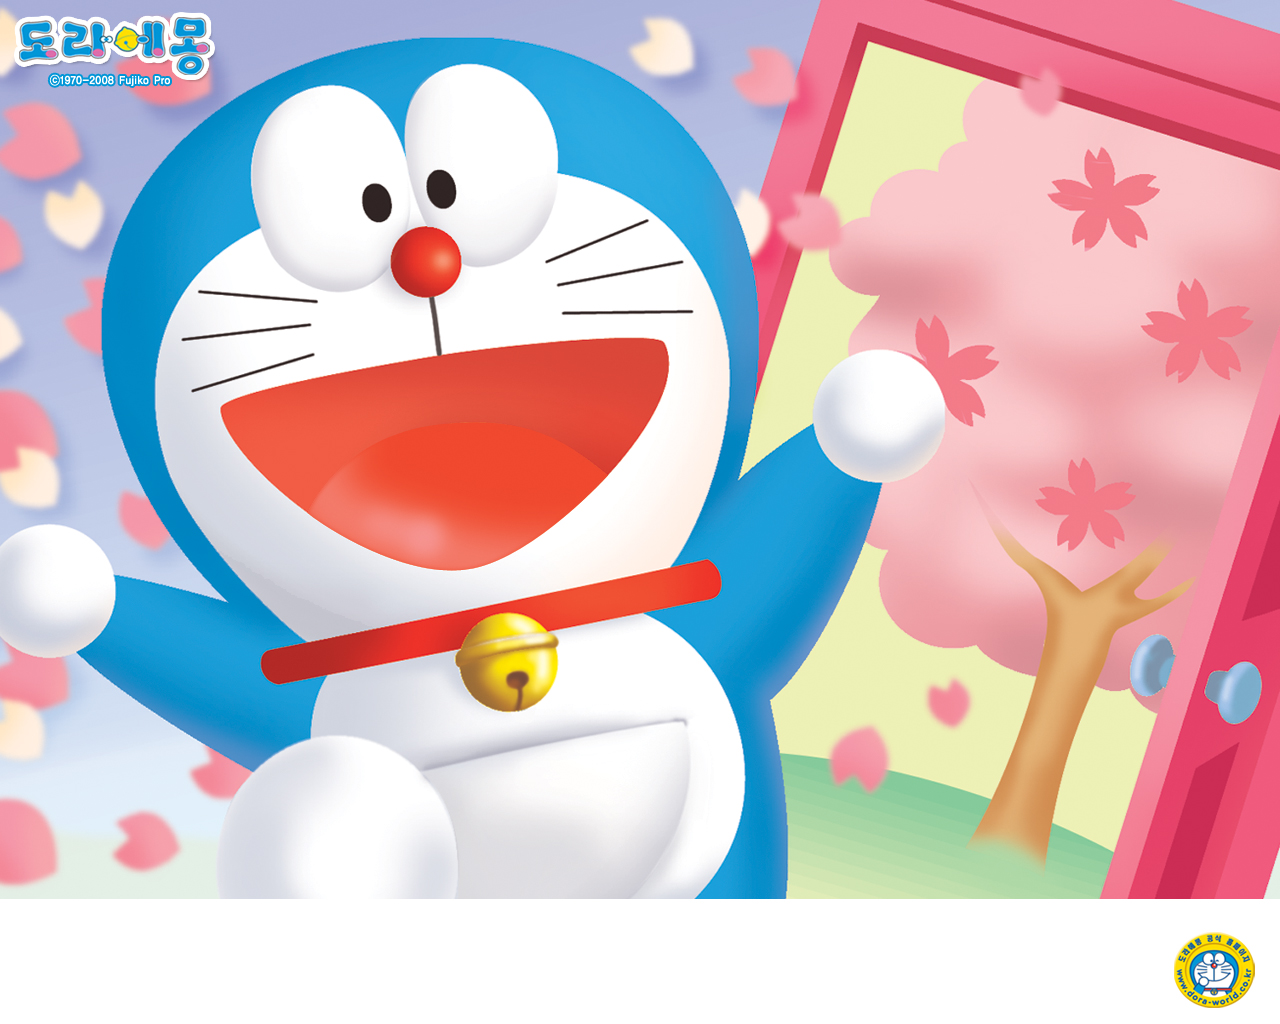 Bạn muốn có một hình nền đáng yêu và vui nhộn cho máy tính của mình? Hãy xem ngay hình nền Doraemon - chú mèo máy huyền thoại đang chờ đón bạn với những trải nghiệm thú vị. Hình ảnh sáng tạo, màu sắc tươi tắn và nét vẽ chuyên nghiệp sẽ khiến bạn không thể rời mắt khỏi màn hình.